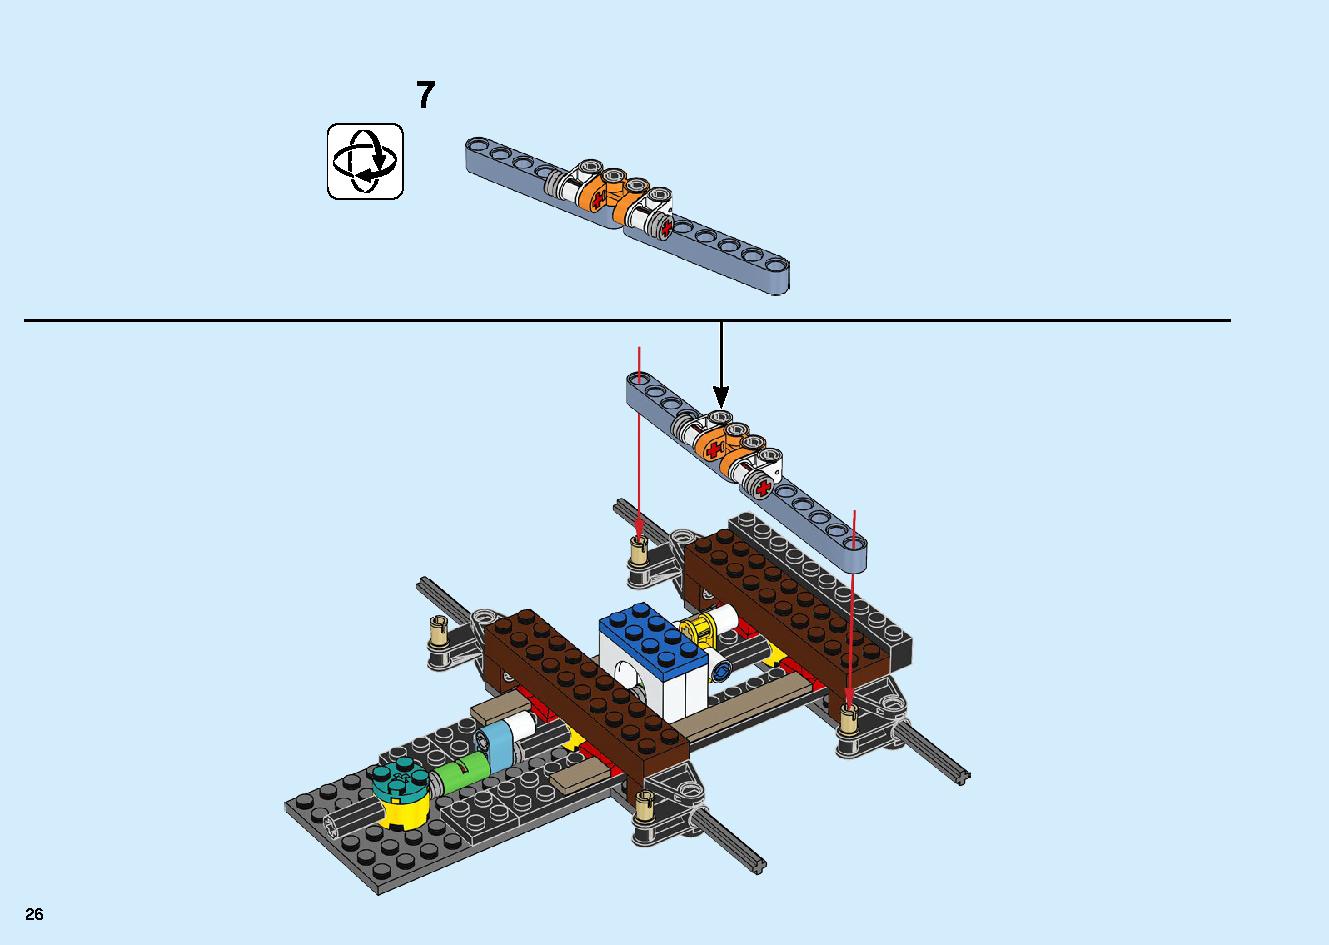 陸上戦艦バウンティ号 70677 レゴの商品情報 レゴの説明書・組立方法 26 page